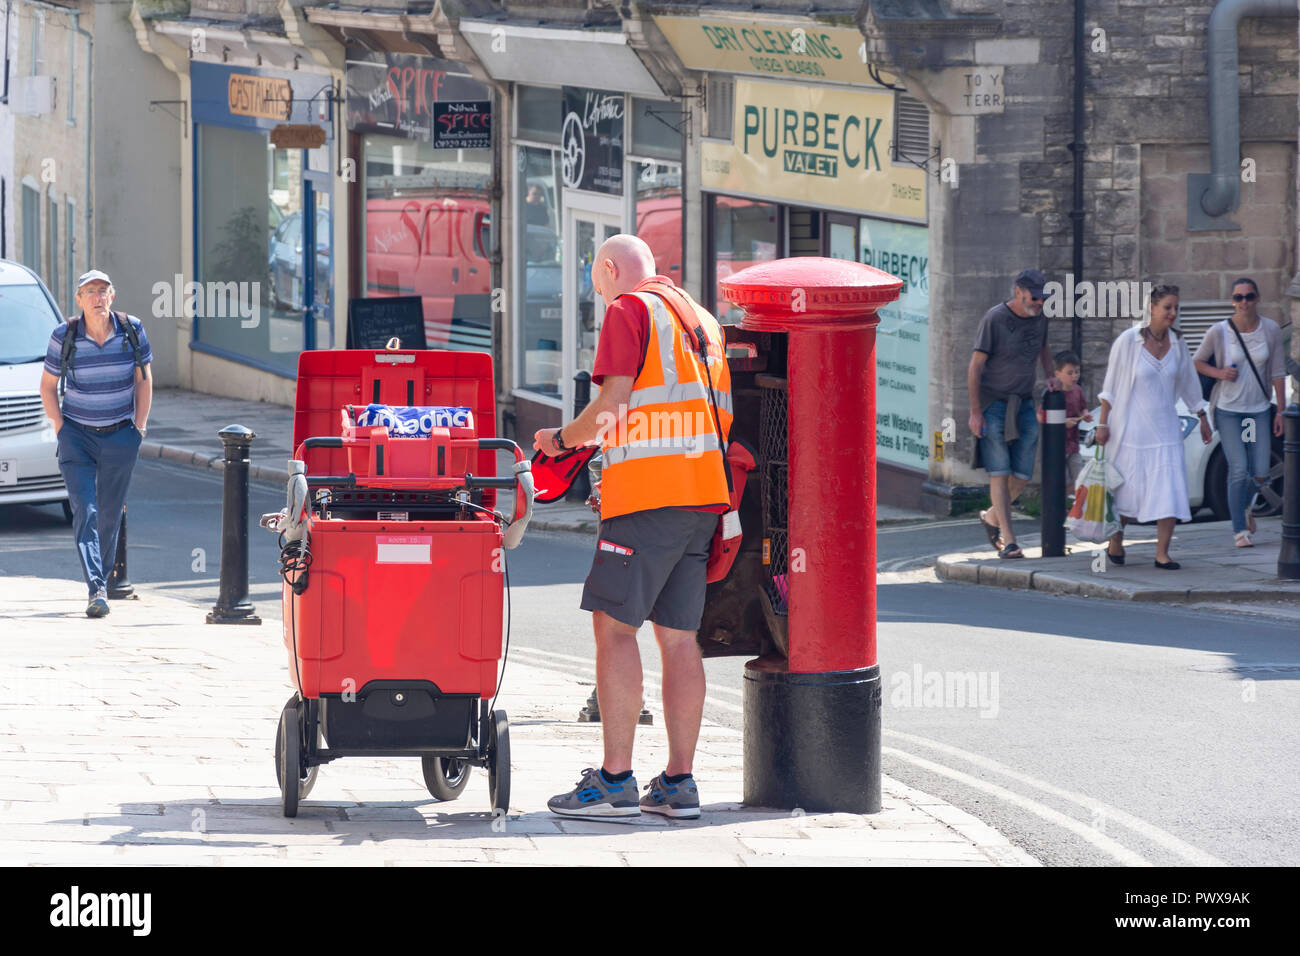 Royal Mail postman vider une boîte postale, High Street, Swanage, à l'île de Purbeck, Dorset, Angleterre, Royaume-Uni Banque D'Images